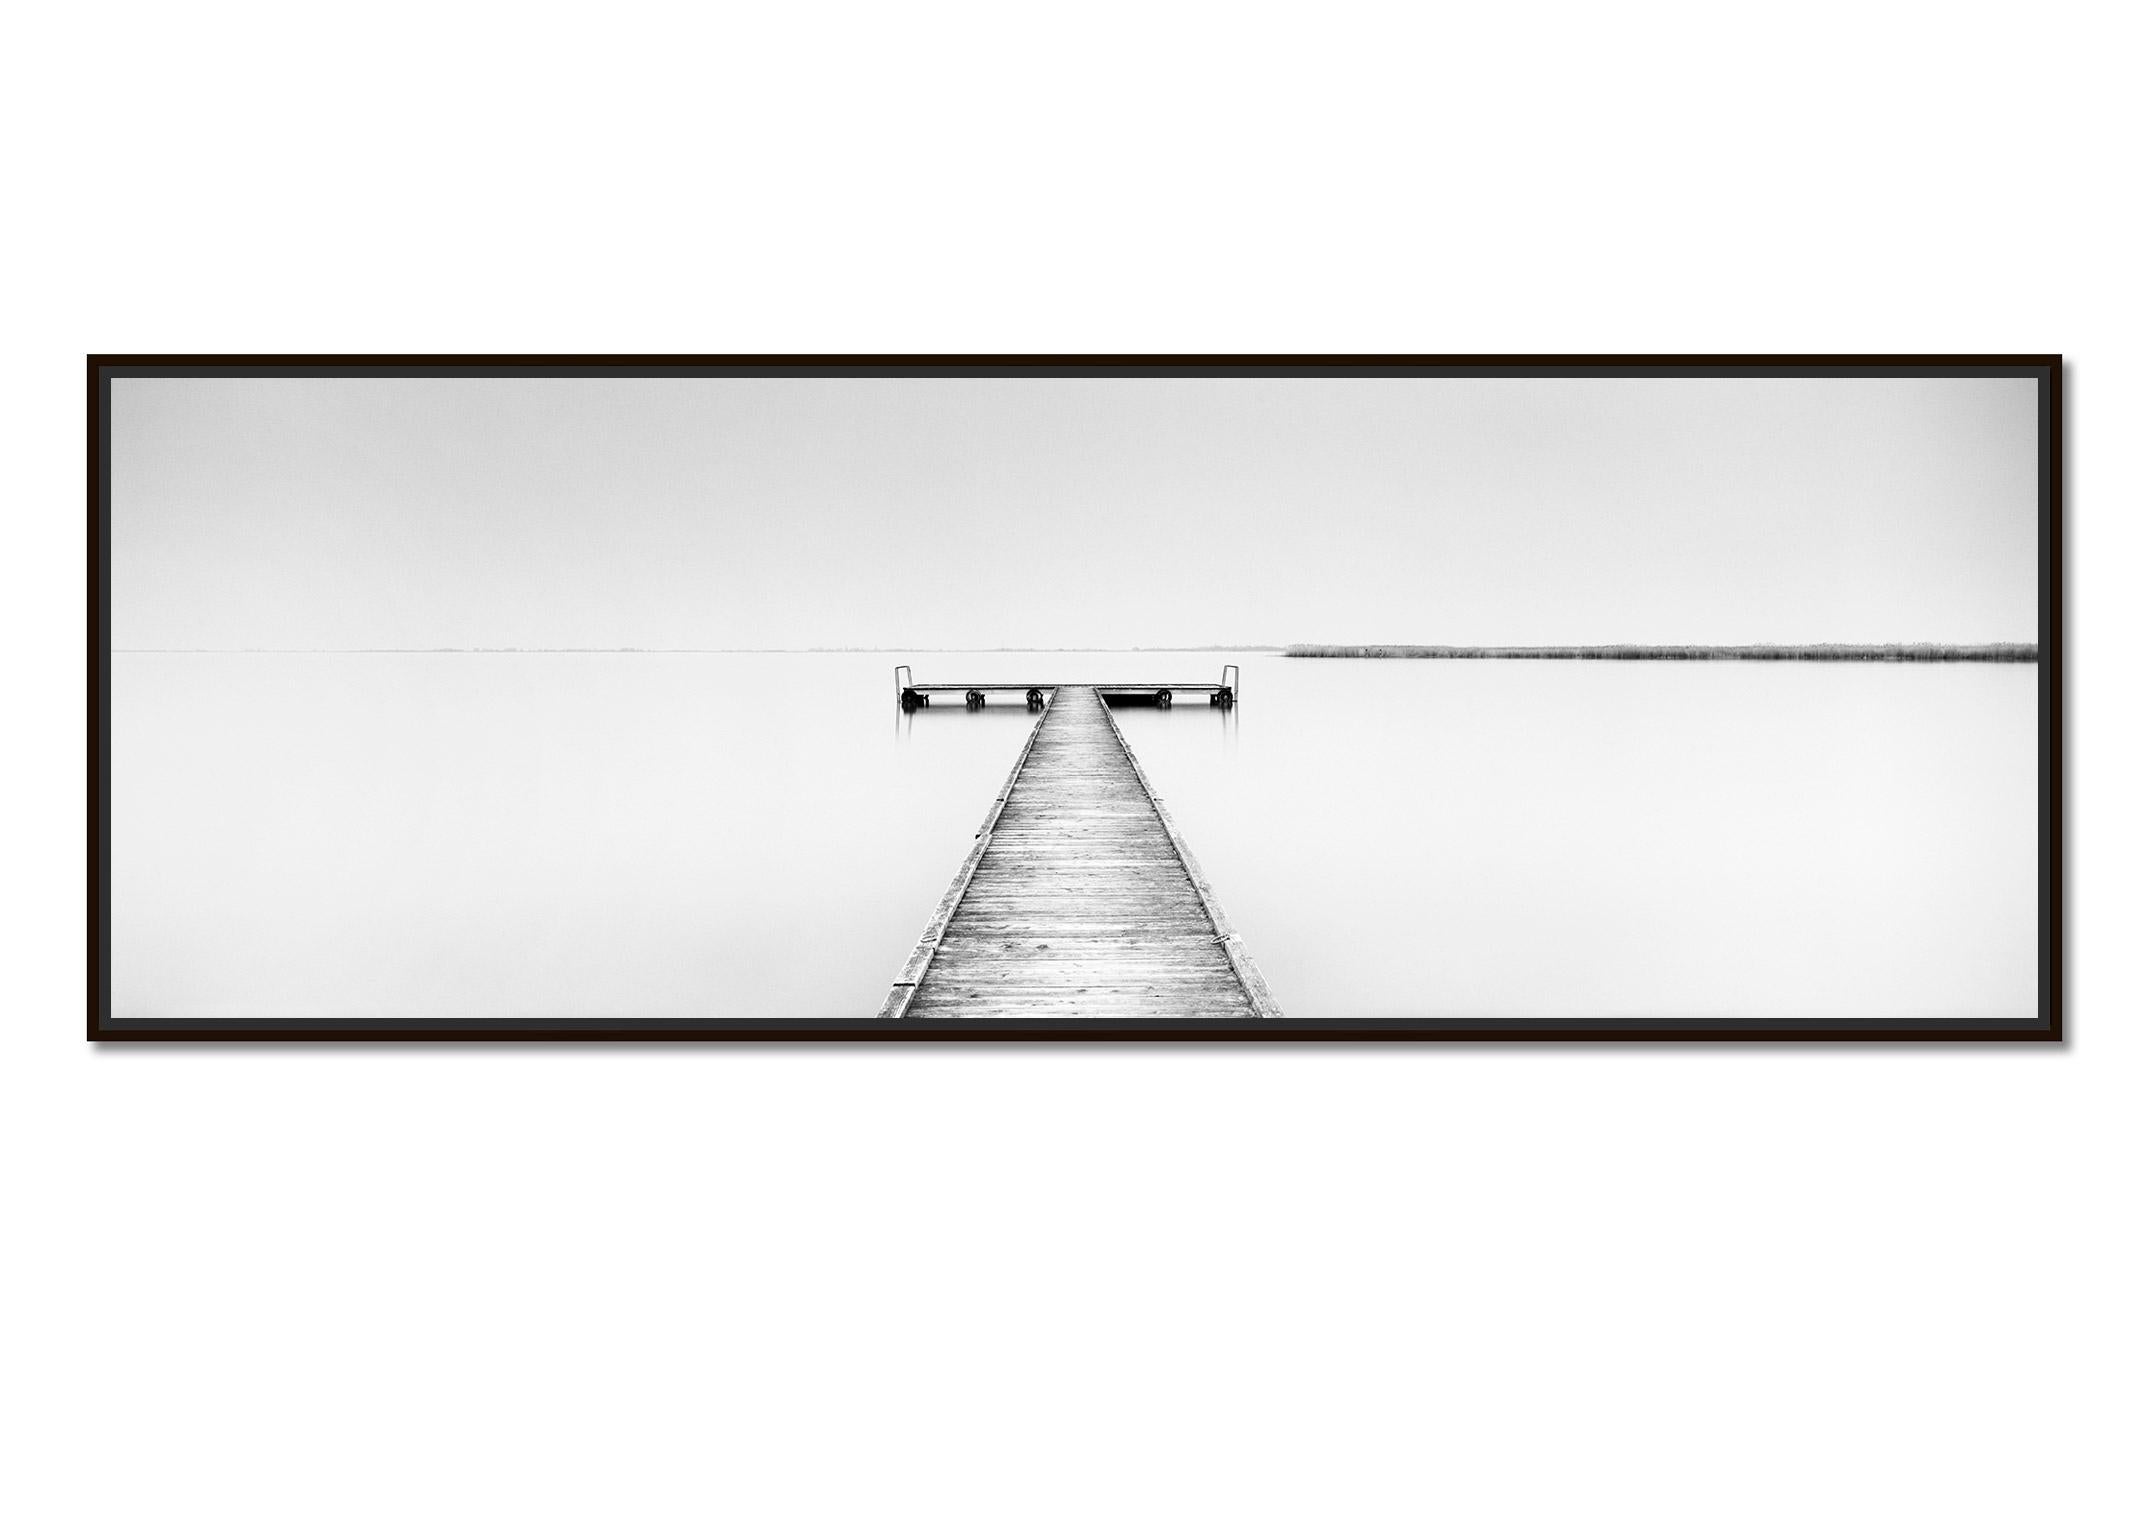 Holz-Pfeiler Panorama, minimalistischer Schwarz-Weiß-Wasserlandschaftsfotografie-Kunstdruck – Photograph von Gerald Berghammer